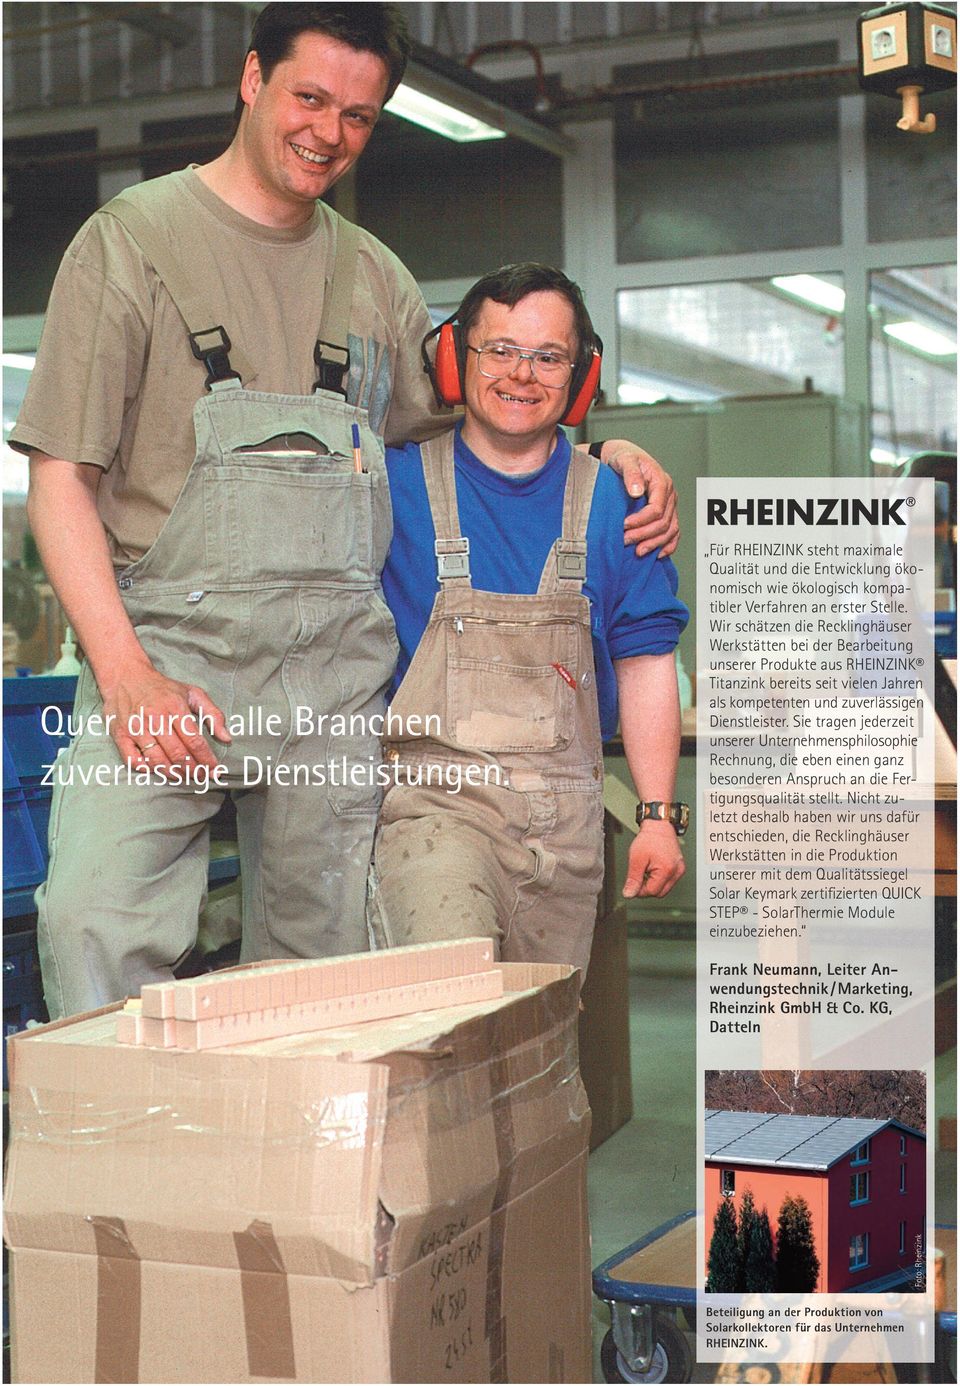 Wir schätzen die Recklinghäuser Werkstätten bei der Bearbeitung unserer Produkte aus RHEINZINK Titanzink bereits seit vielen Jahren als kompetenten und zuverlässigen Dienstleister.